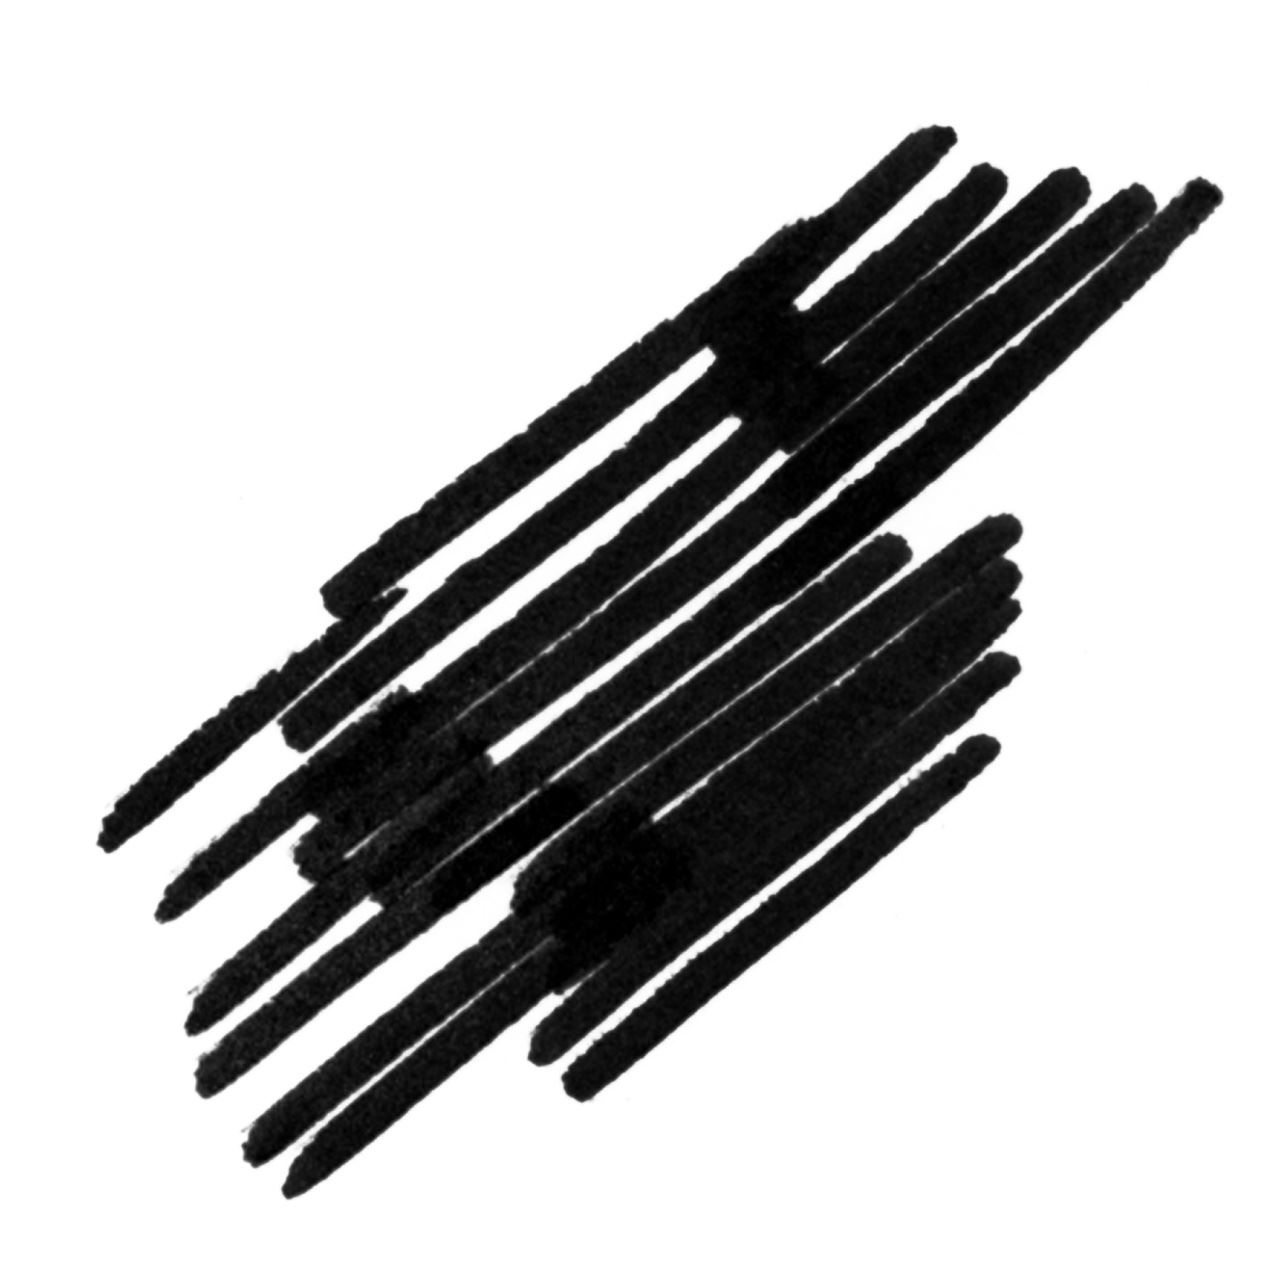 Faber-Castell - Pitt Artist Pen Rundspitze 1.5 Tuschestift, schwarz